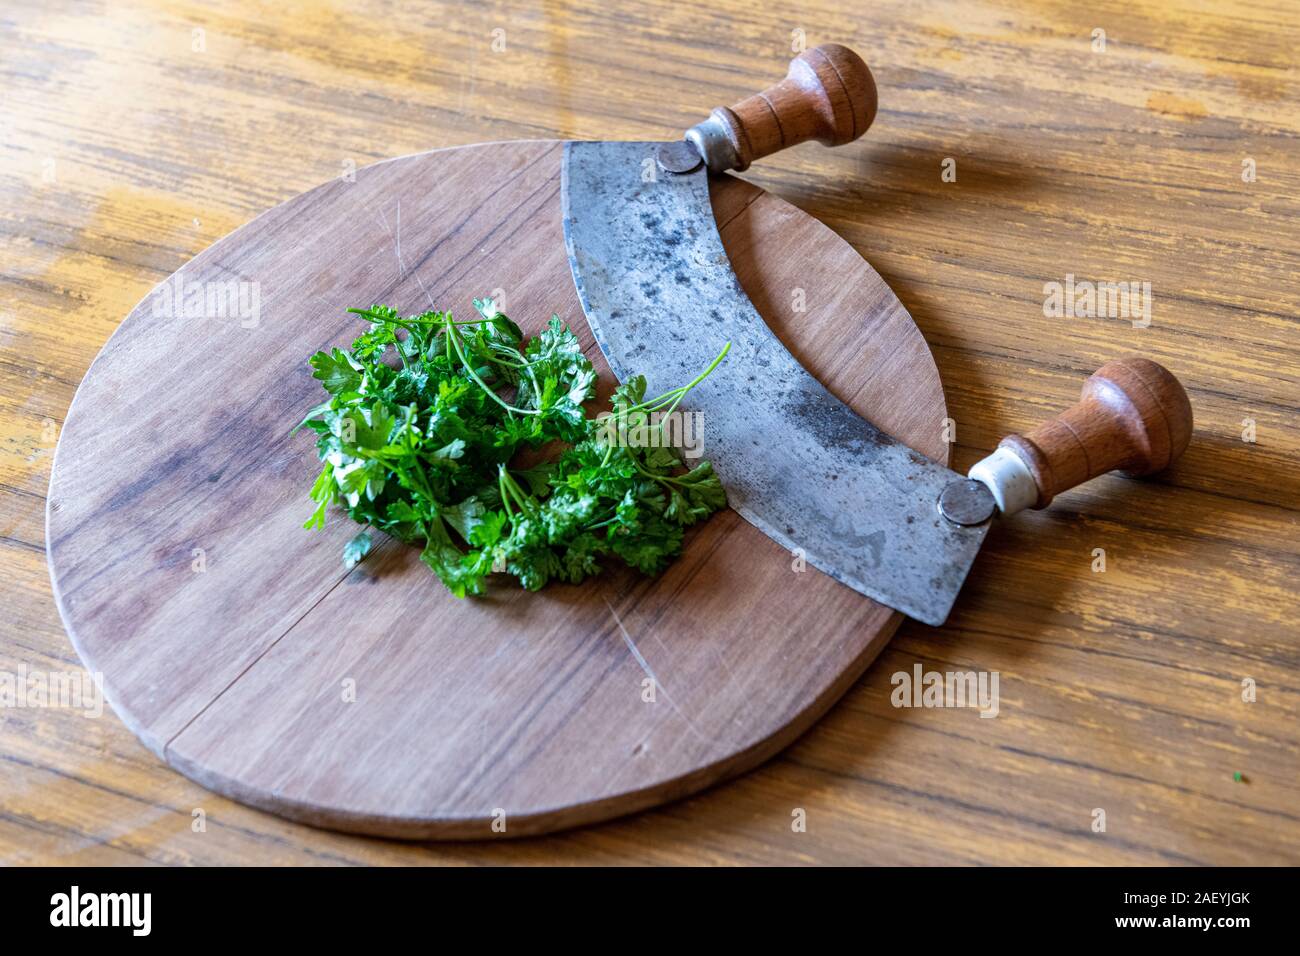 https://c8.alamy.com/comp/2AEYJGK/onion-parsley-and-chopper-on-a-wooden-board-in-a-kitchen-2AEYJGK.jpg